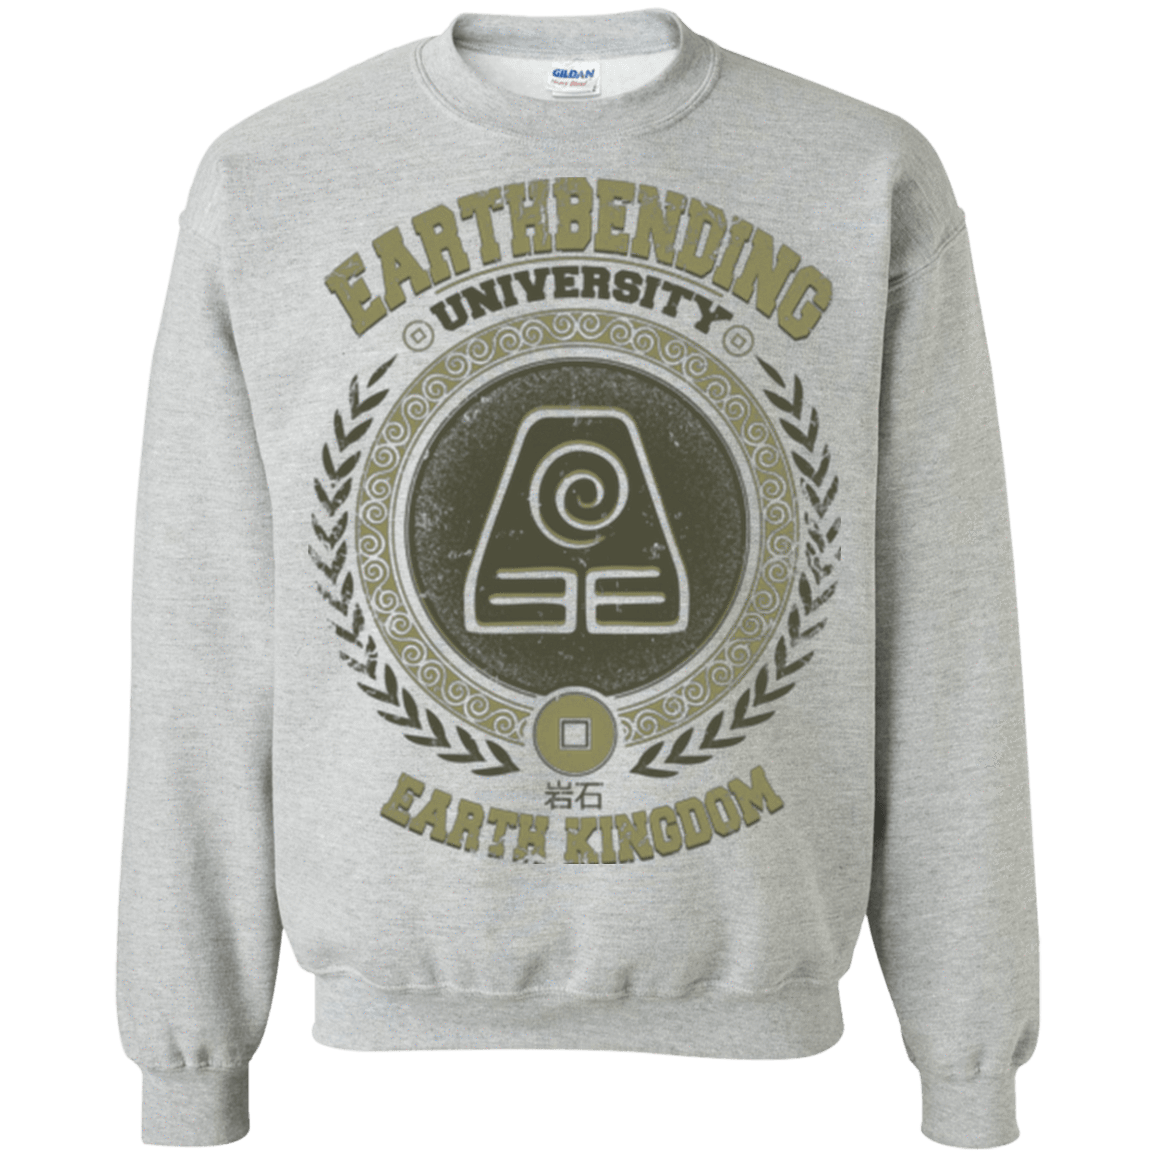 Sweatshirts Sport Grey / Small Earthbending university Crewneck Sweatshirt